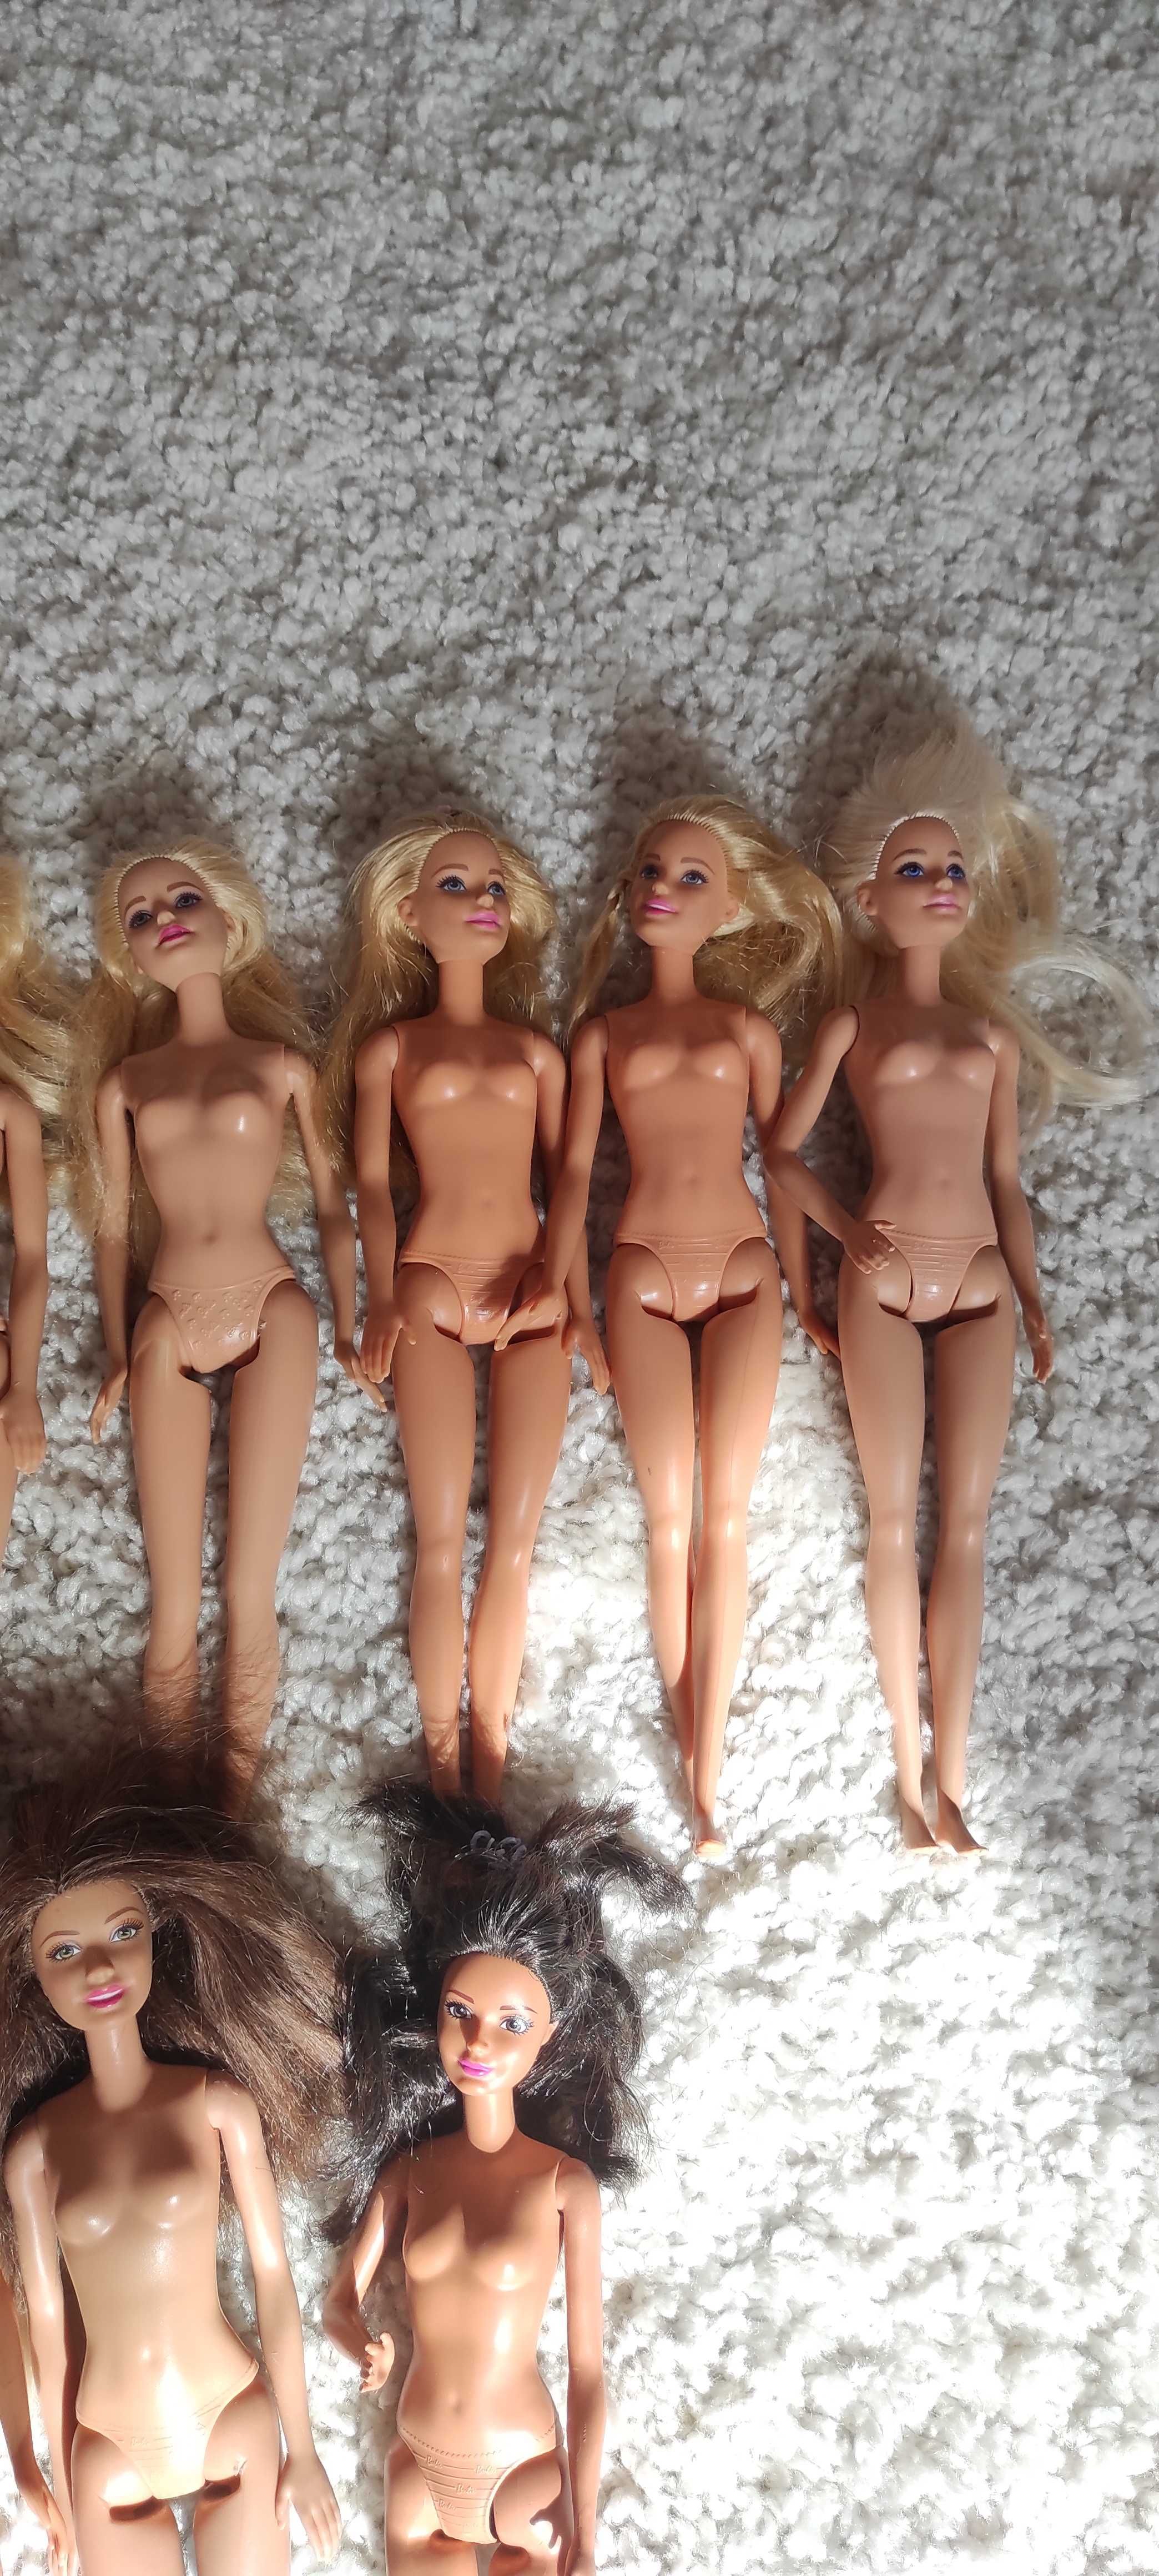 Lalki barbie (9 barbie + 2 mniejsze lalki), stan idealny